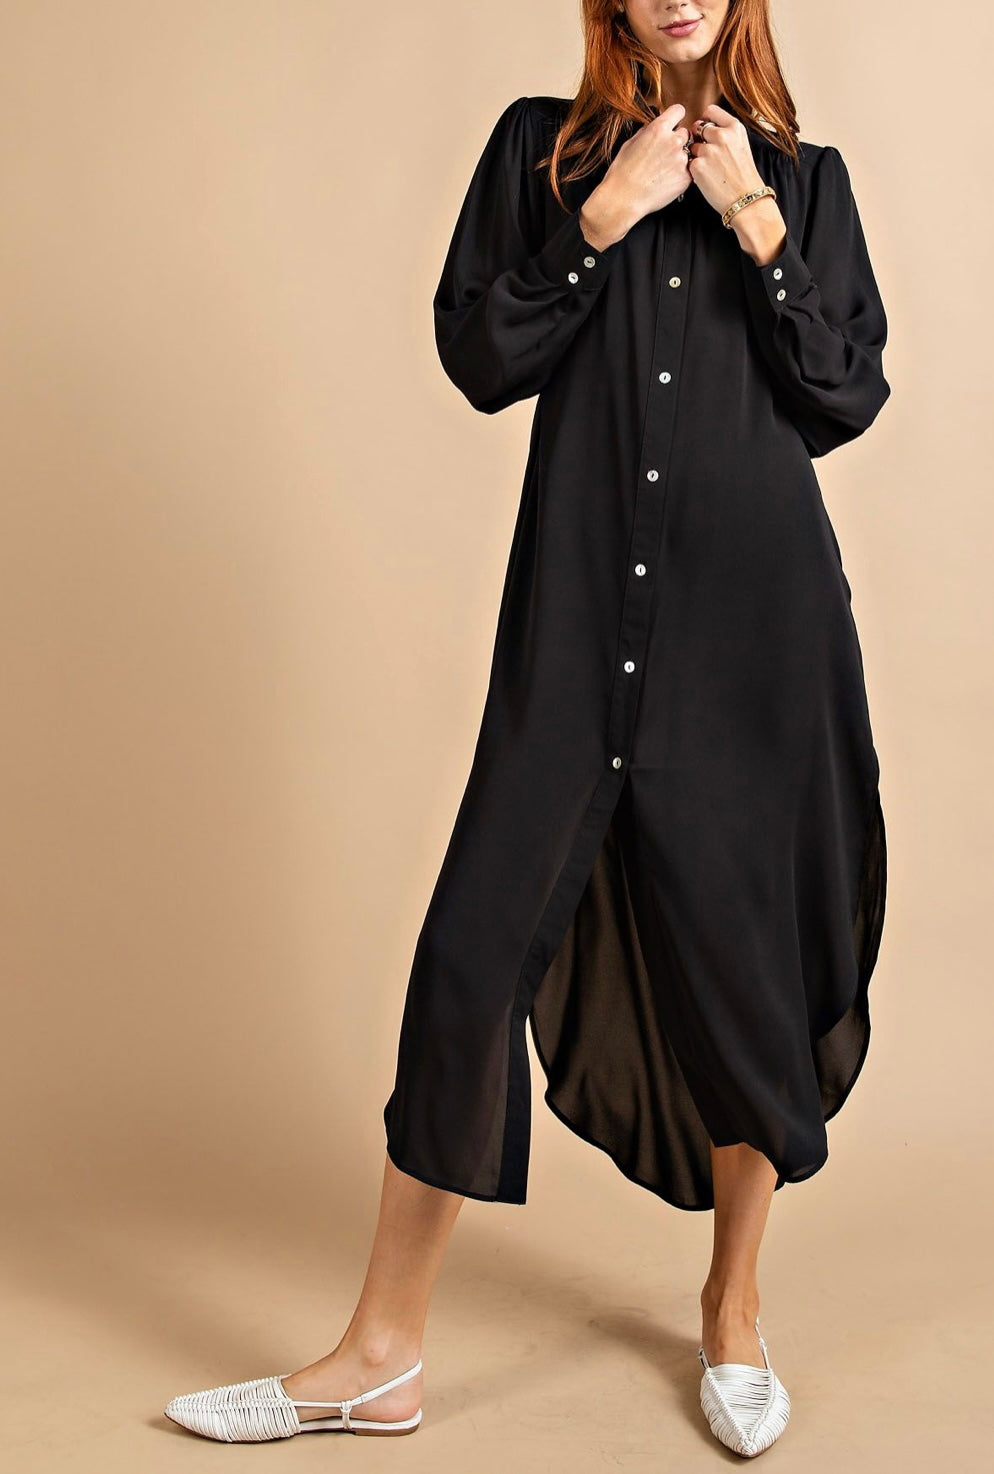 PLUS SIZE The Taqwaa Shirtdress - Black